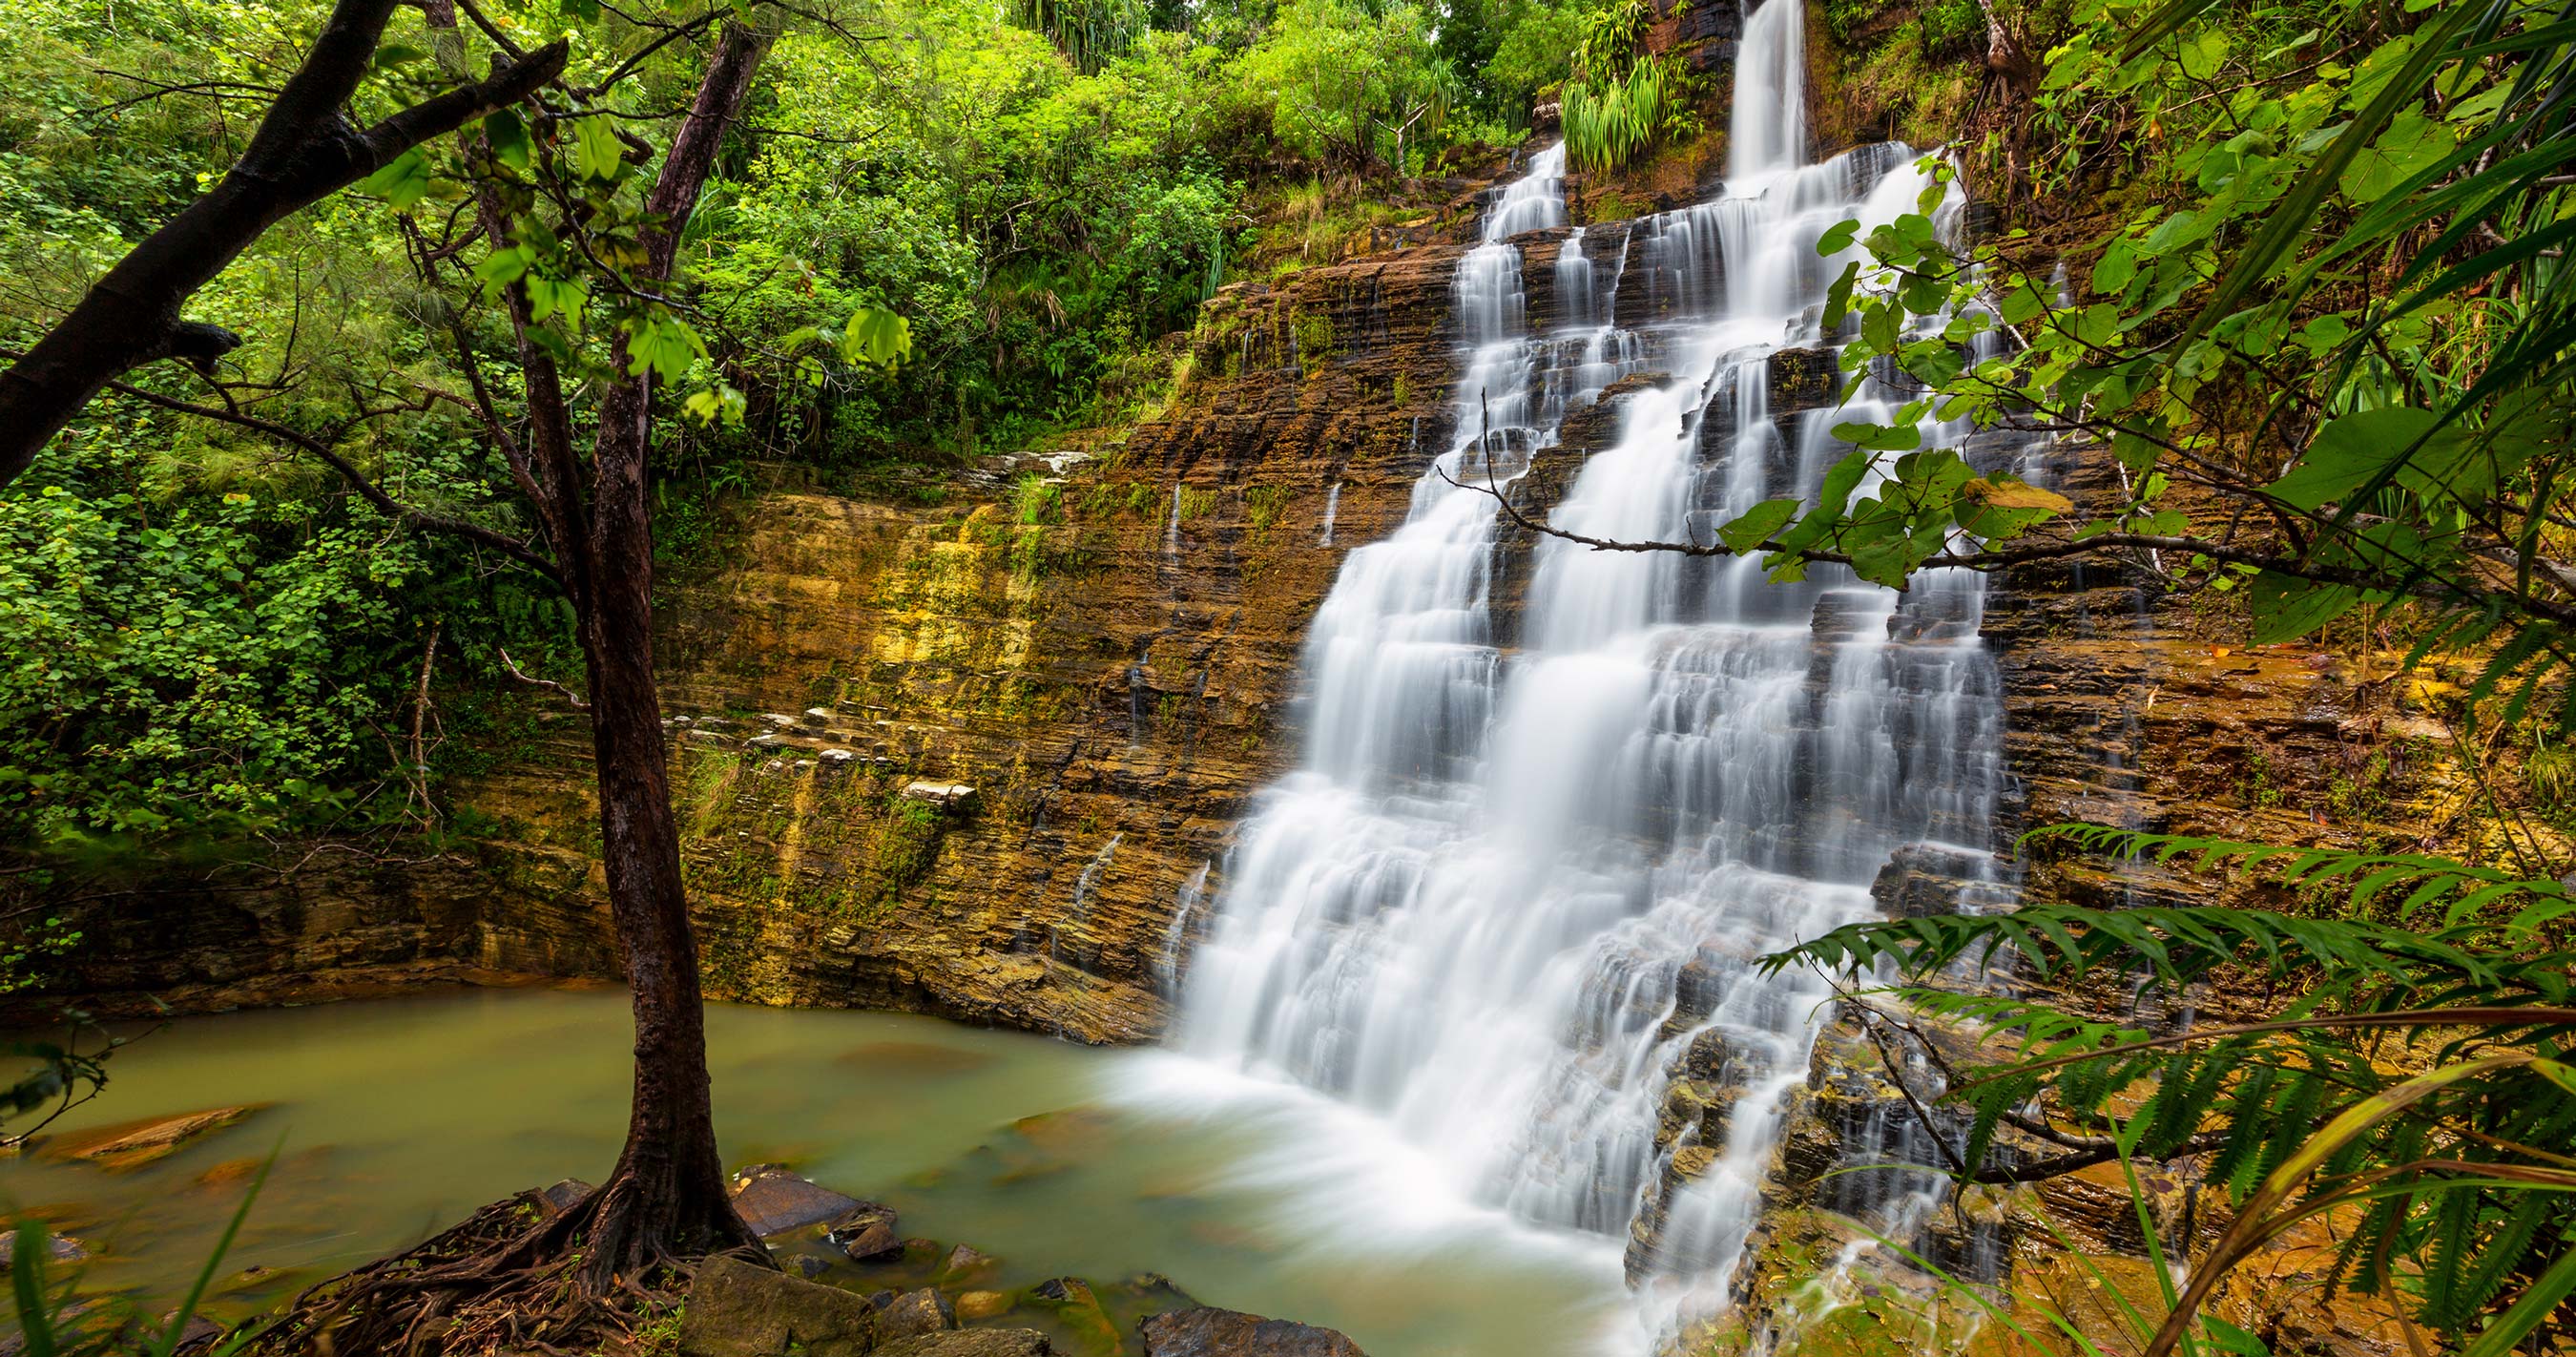 Tarzan Falls waterfall in Santa Rita, Guam.